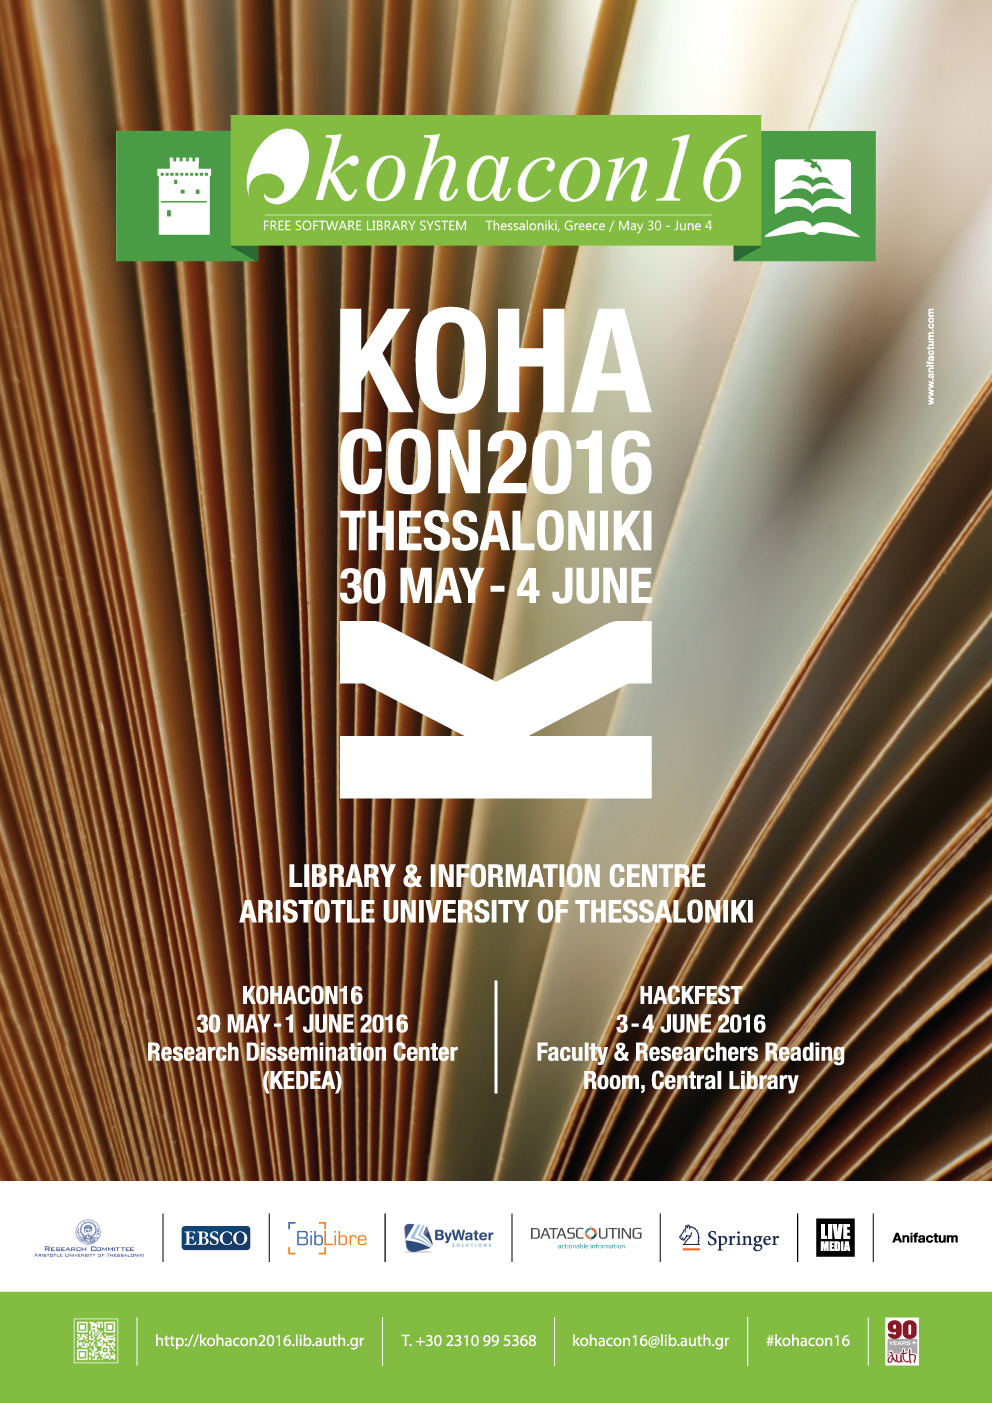 KohaCon16 - Official Poster